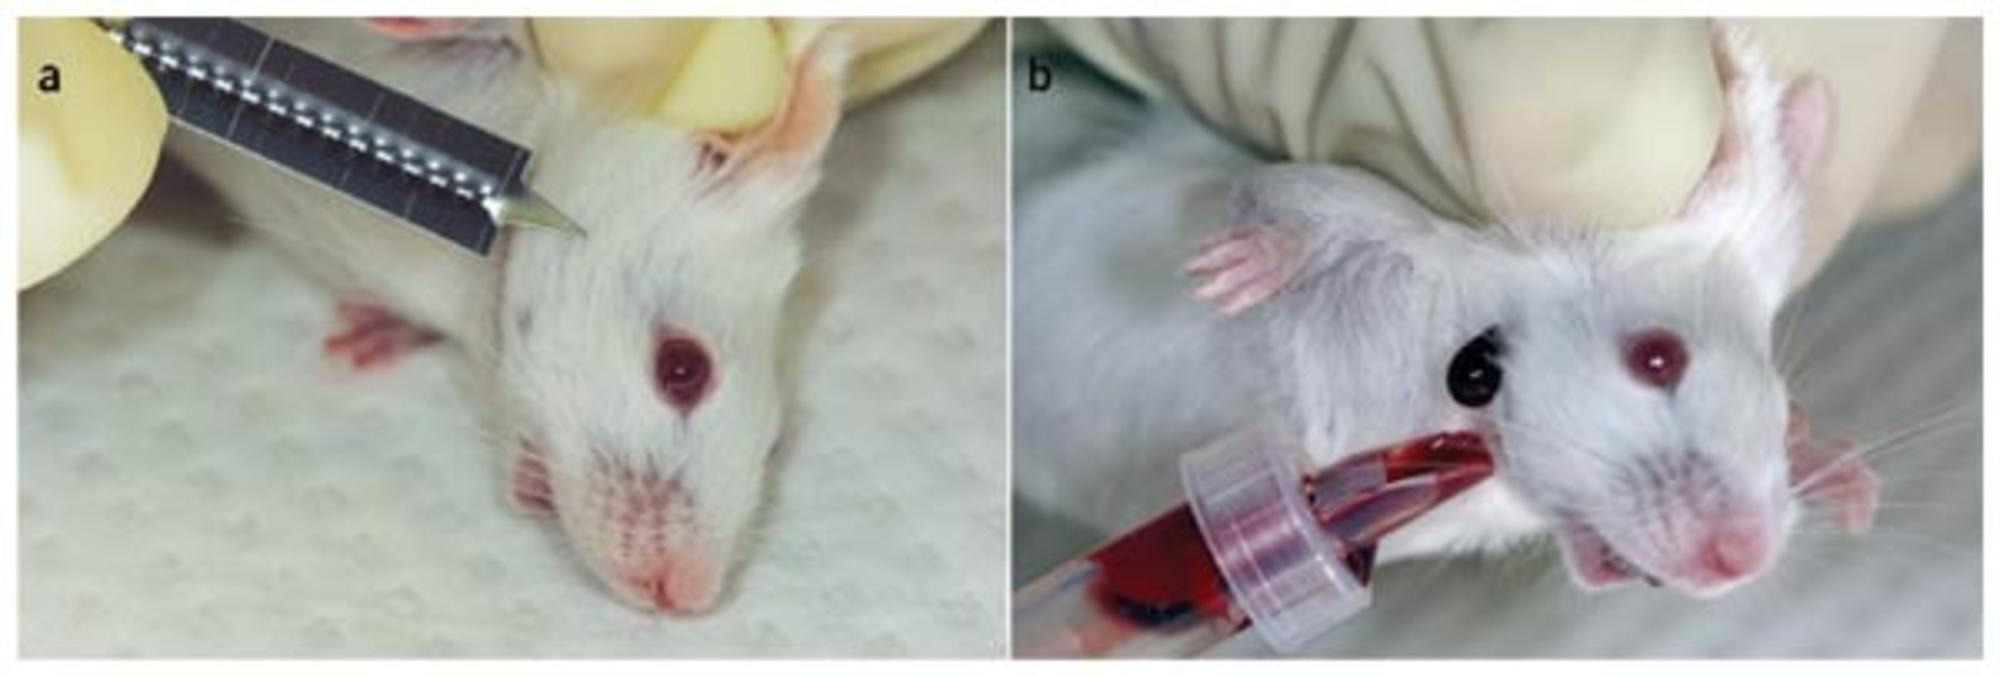 Extracción de sangre en ratones utilizando la vía del seno venoso submandibular